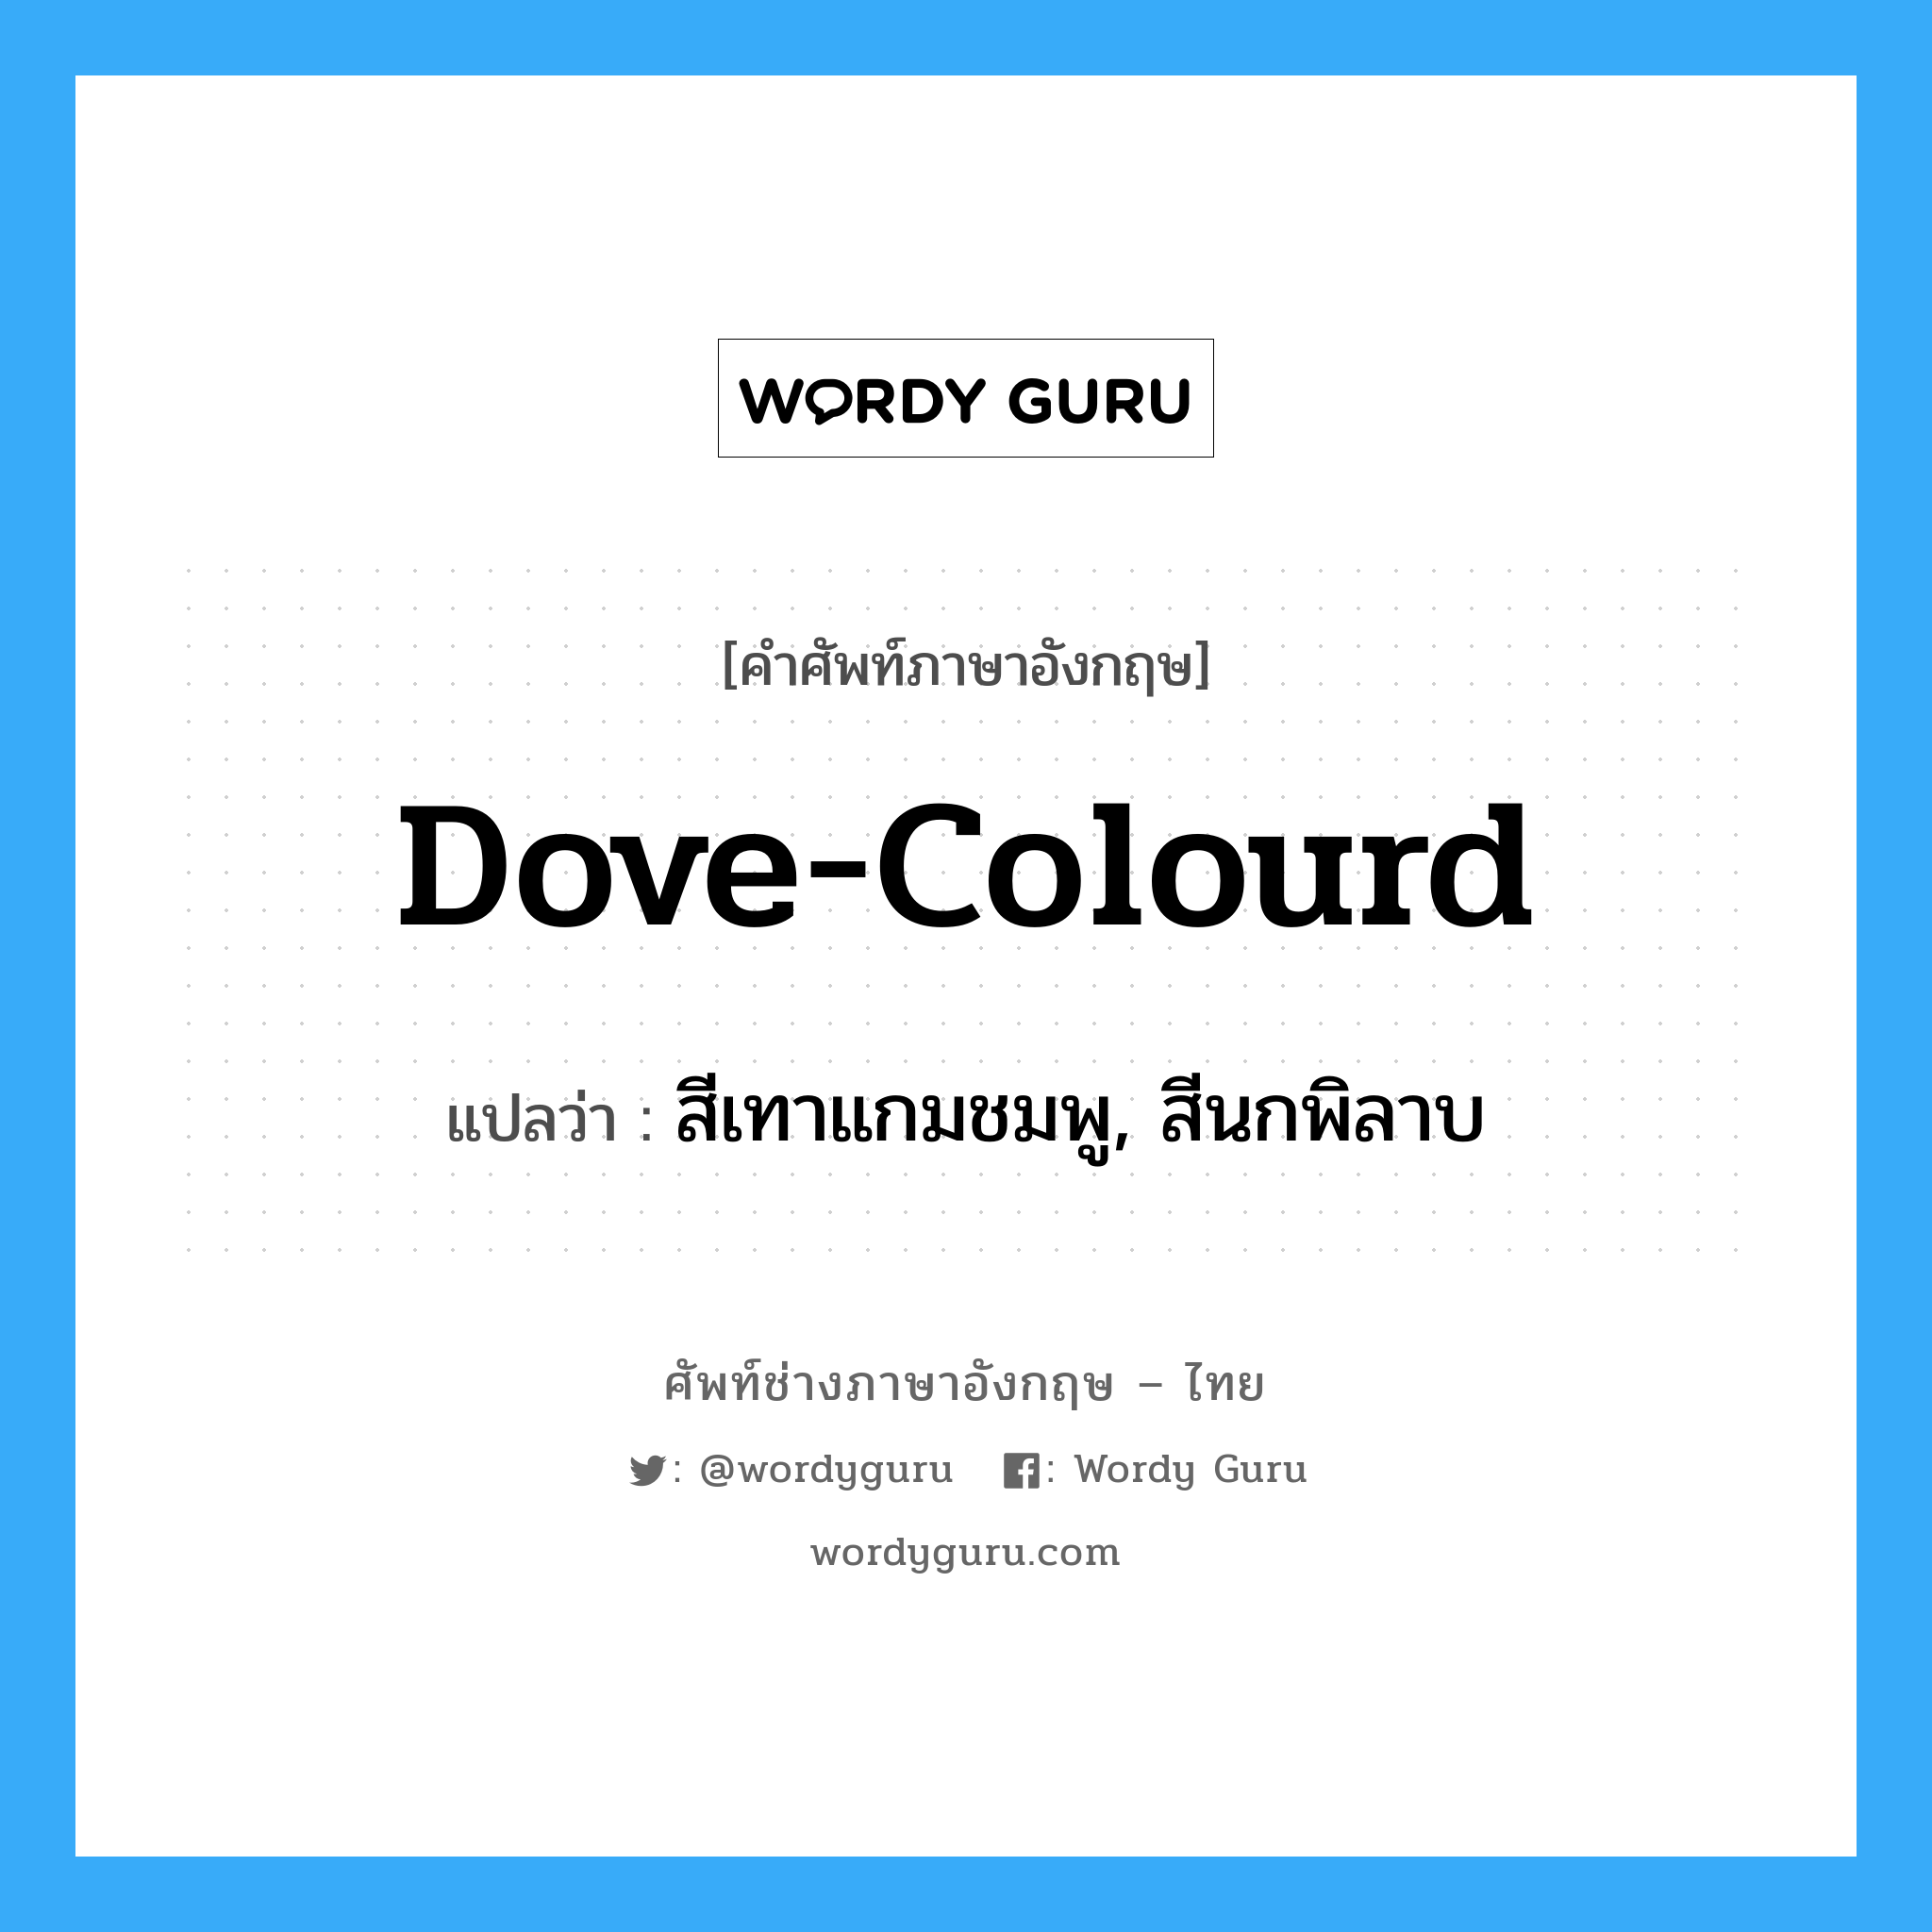 dove-colourd แปลว่า?, คำศัพท์ช่างภาษาอังกฤษ - ไทย dove-colourd คำศัพท์ภาษาอังกฤษ dove-colourd แปลว่า สีเทาแกมชมพู, สีนกพิลาบ